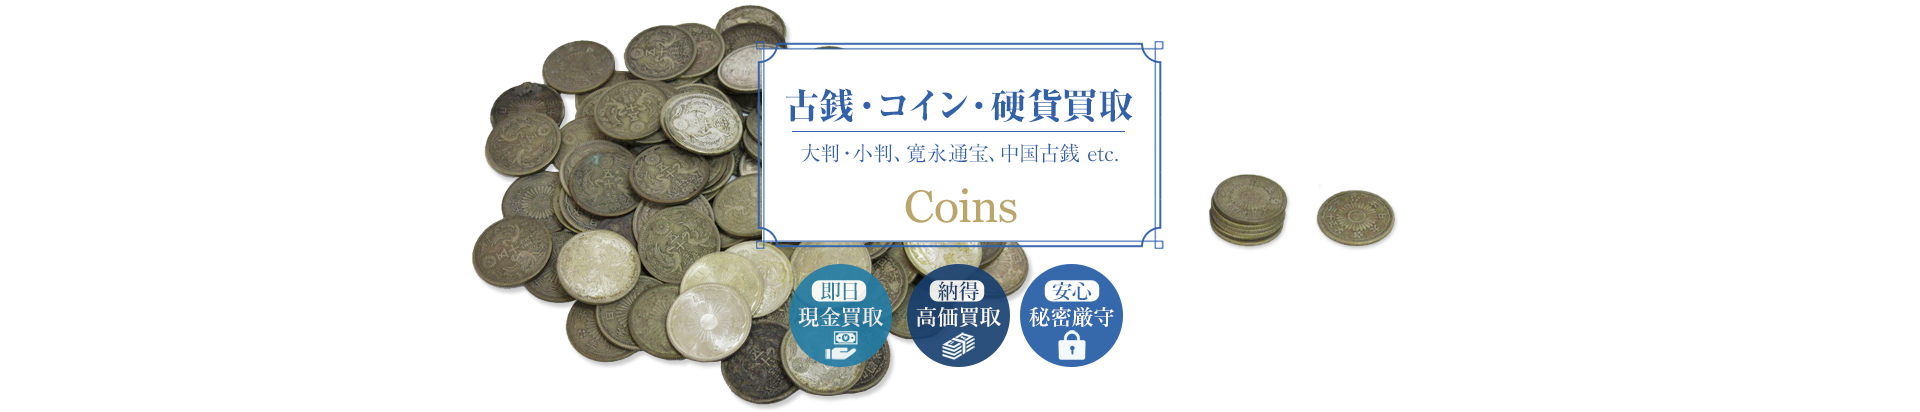 古銭/コイン/硬貨